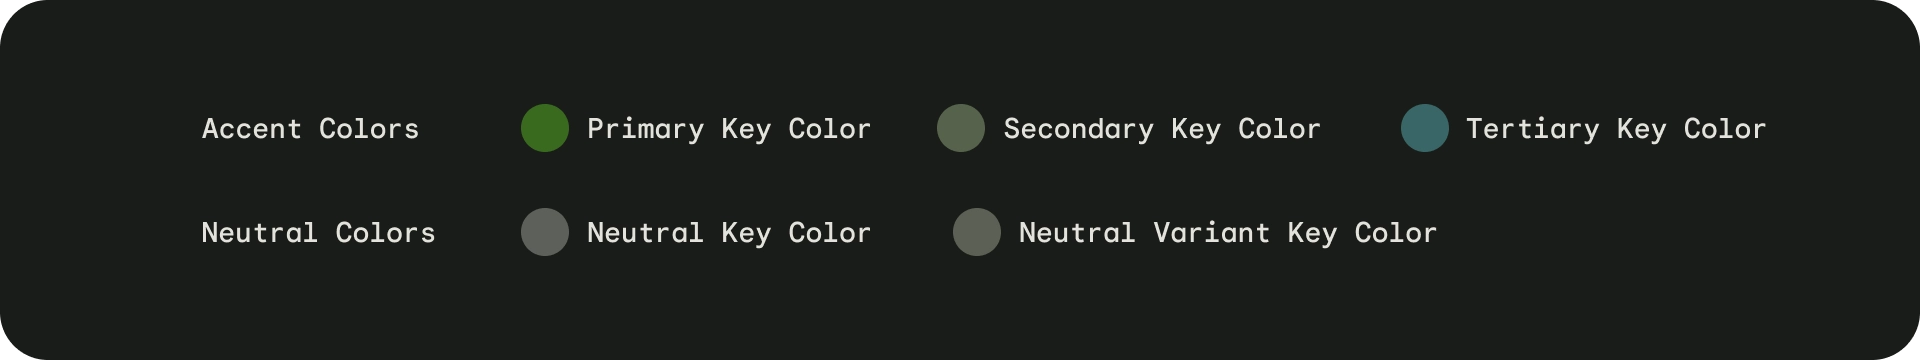 Key Colors